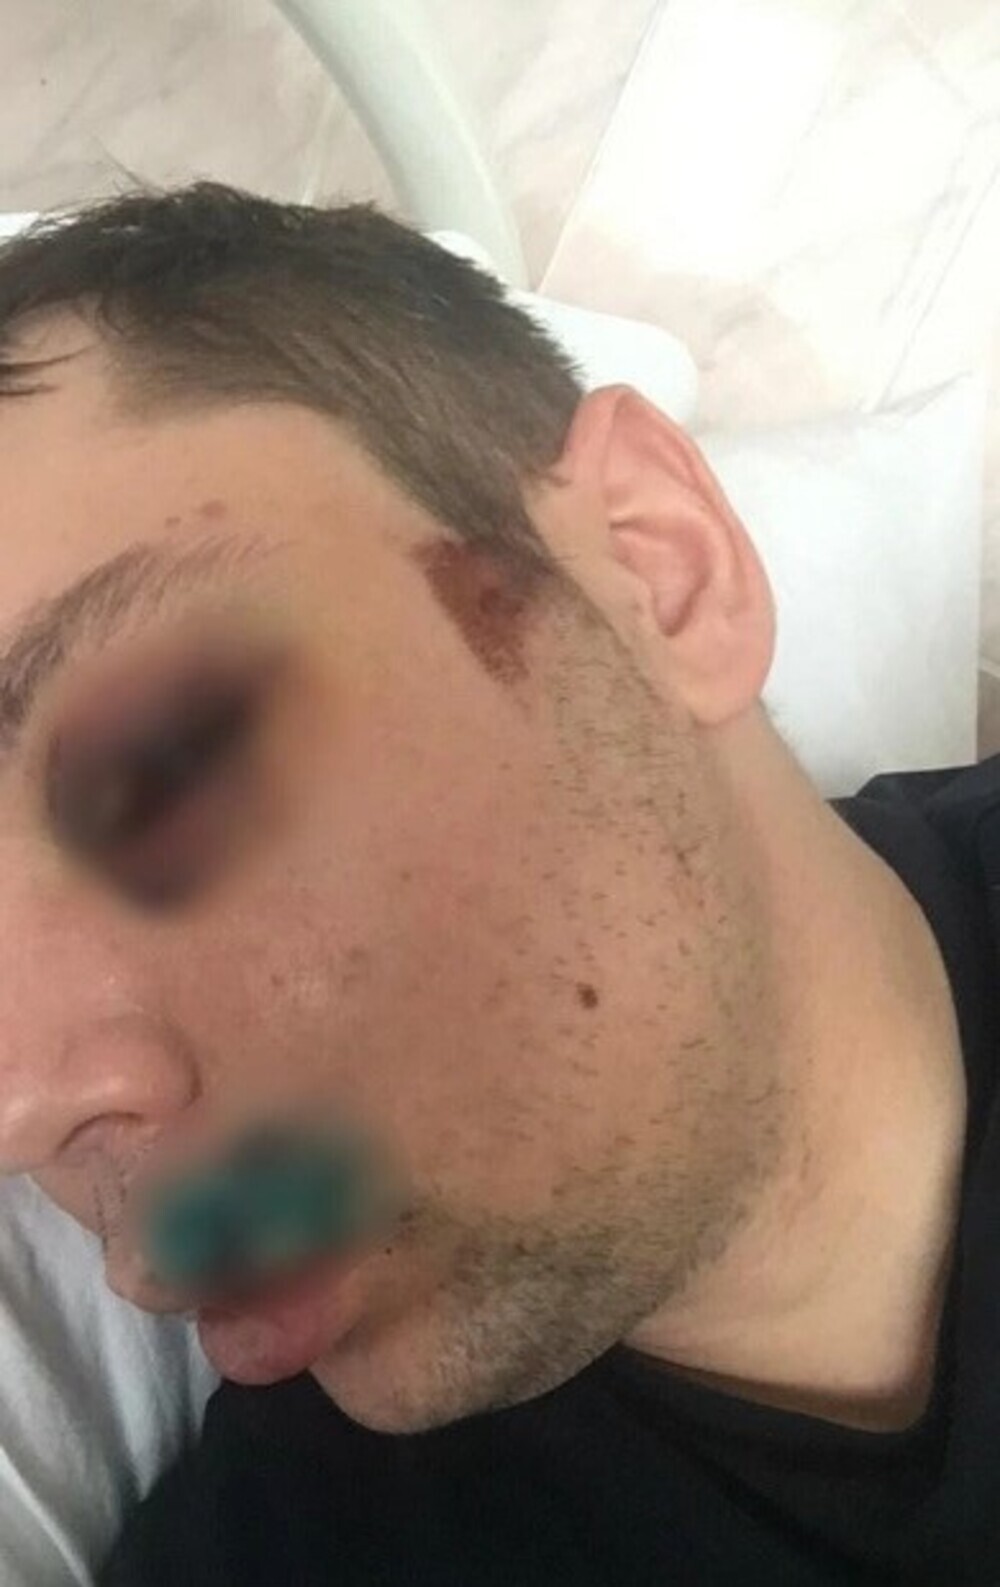 «Их здесь отмажут»: общественник жёстко прокомментировал избиение парня кавказцами в Екатеринбурге